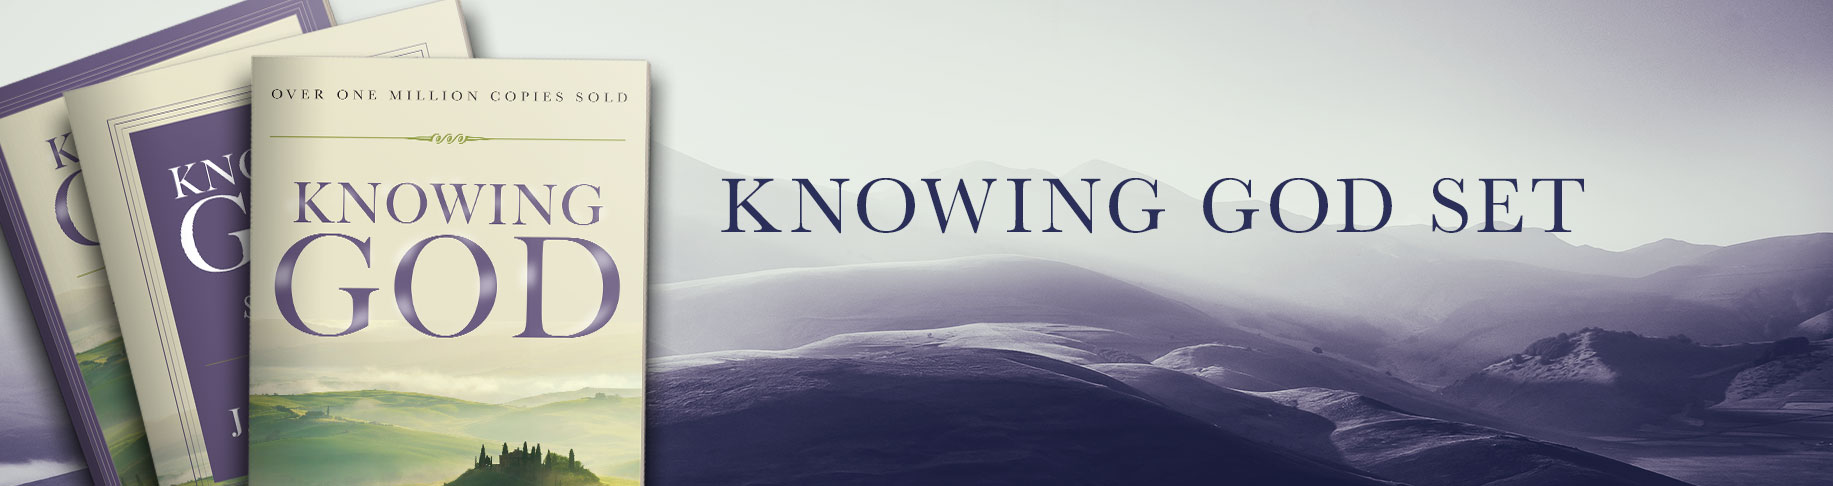 Knowing God Set